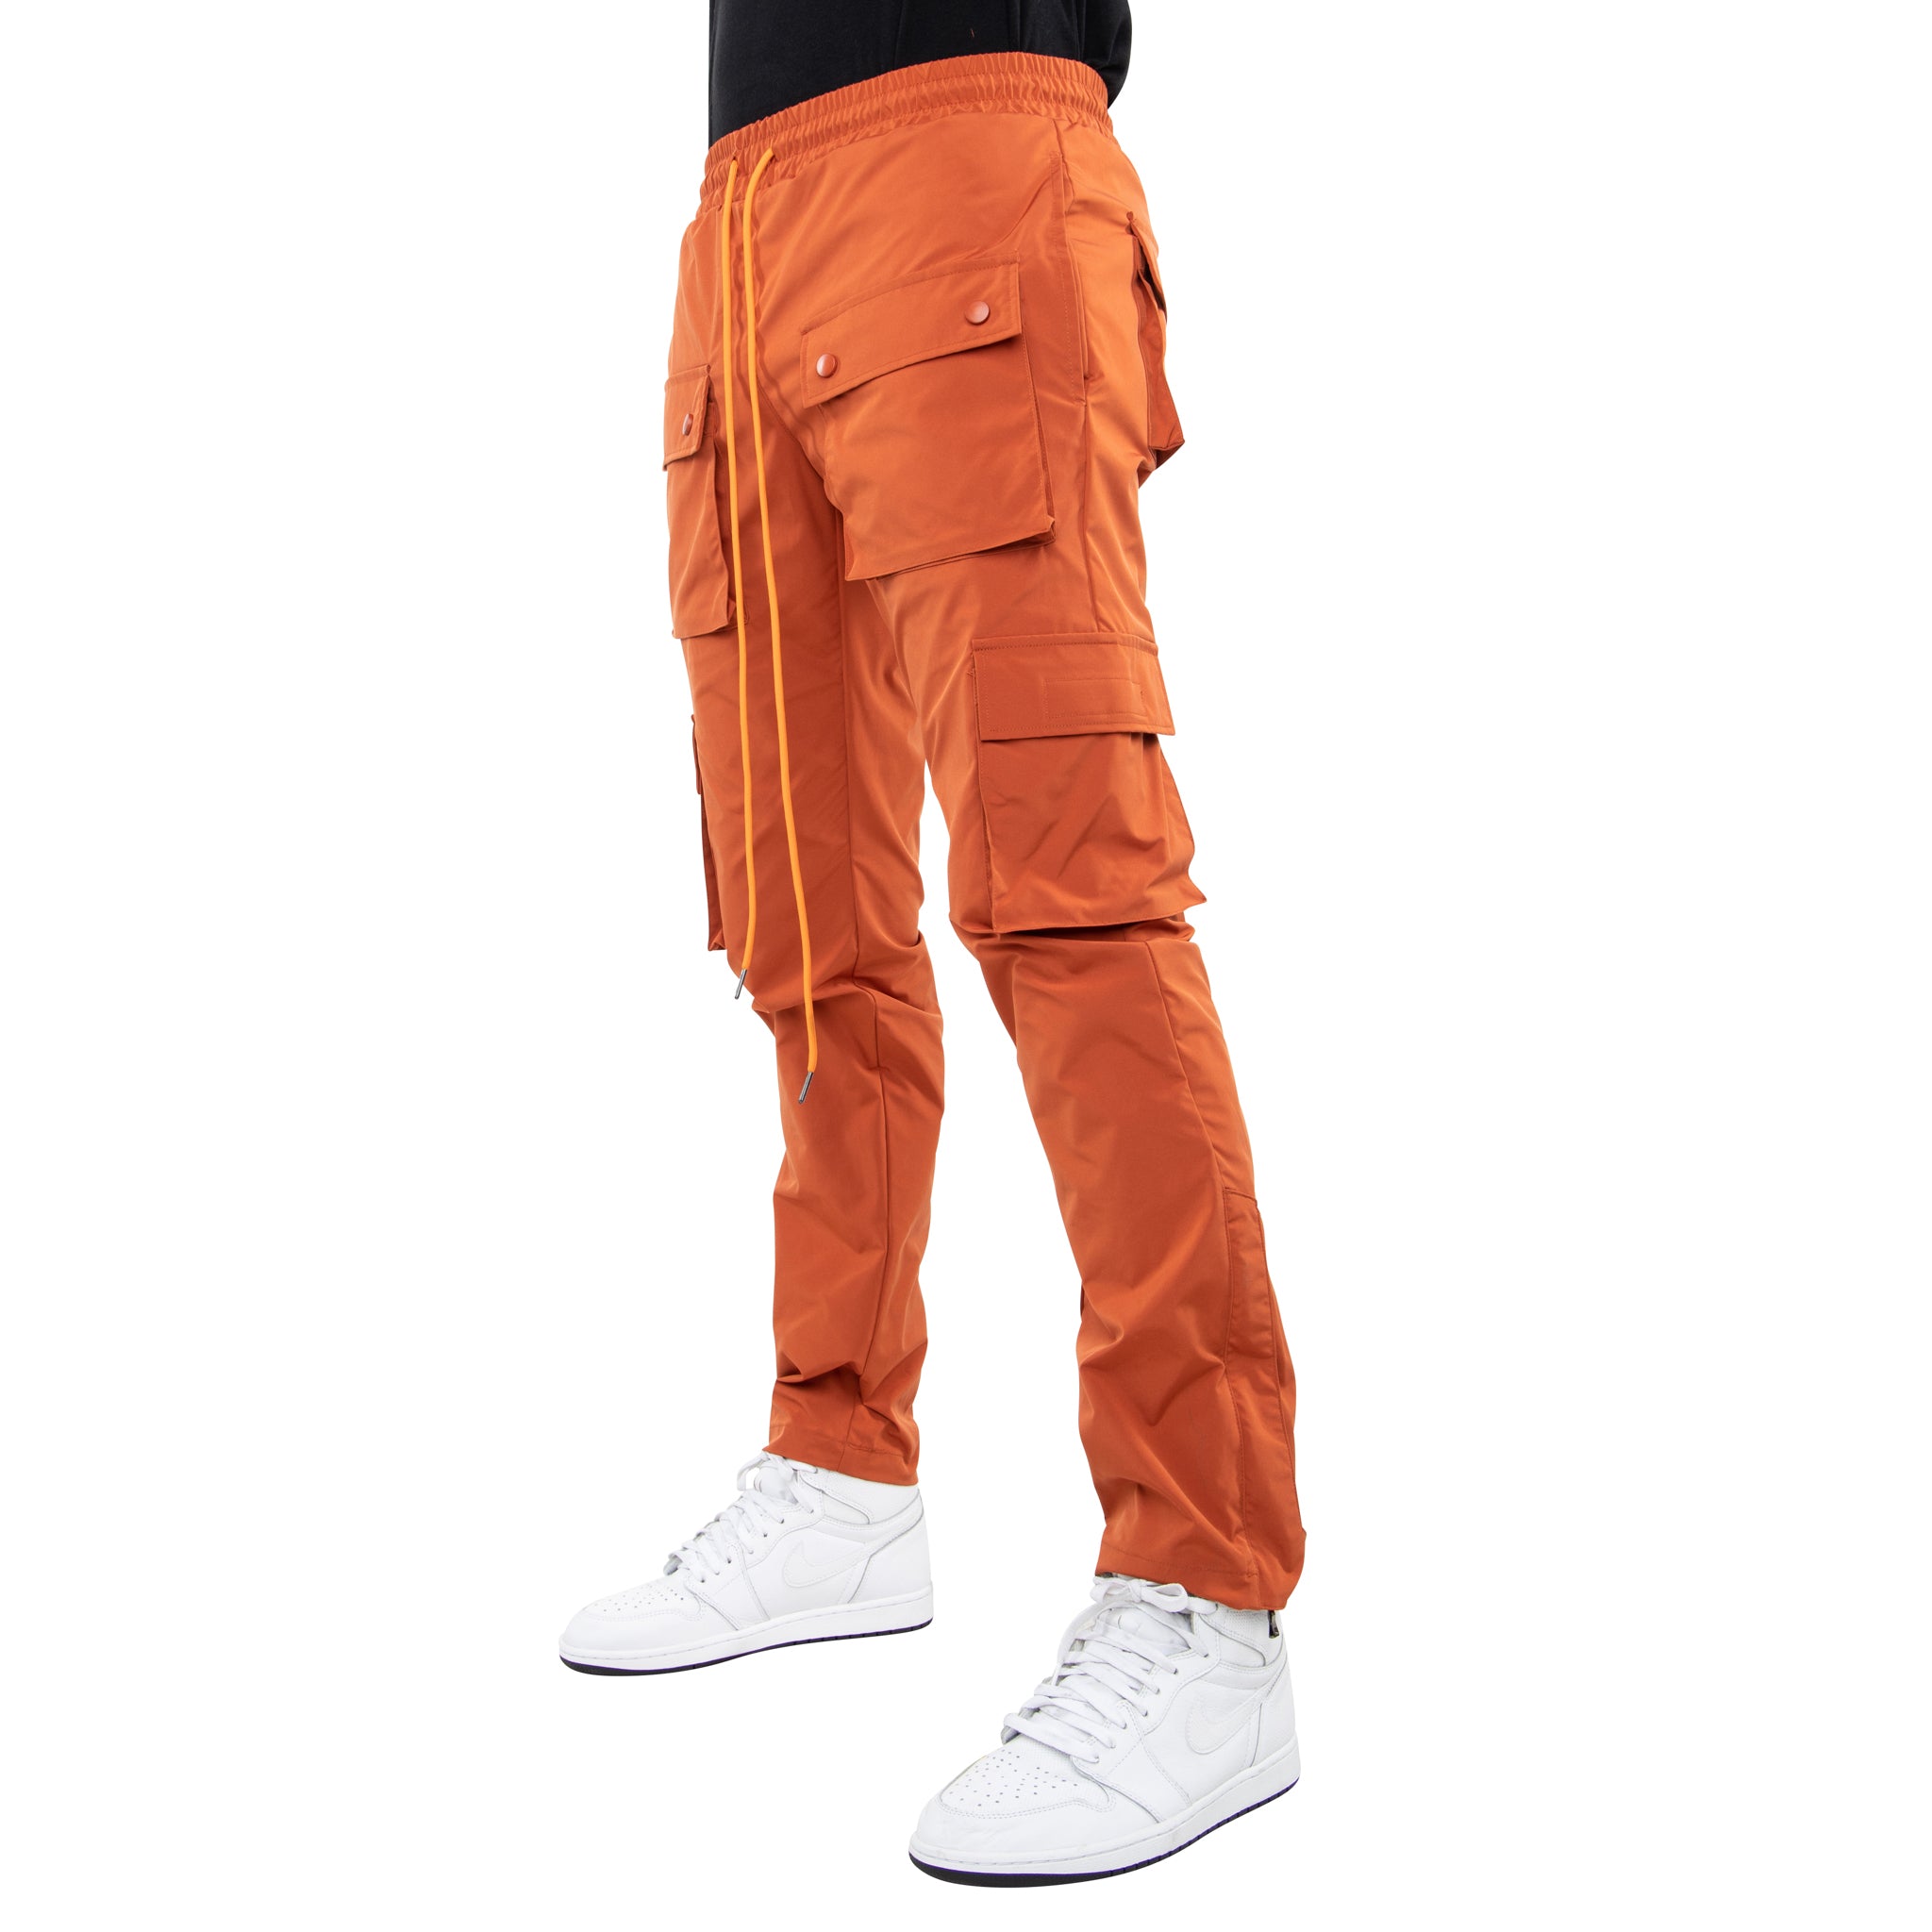 Orange Mens Cargo Pants  Clothing  Stylicy India